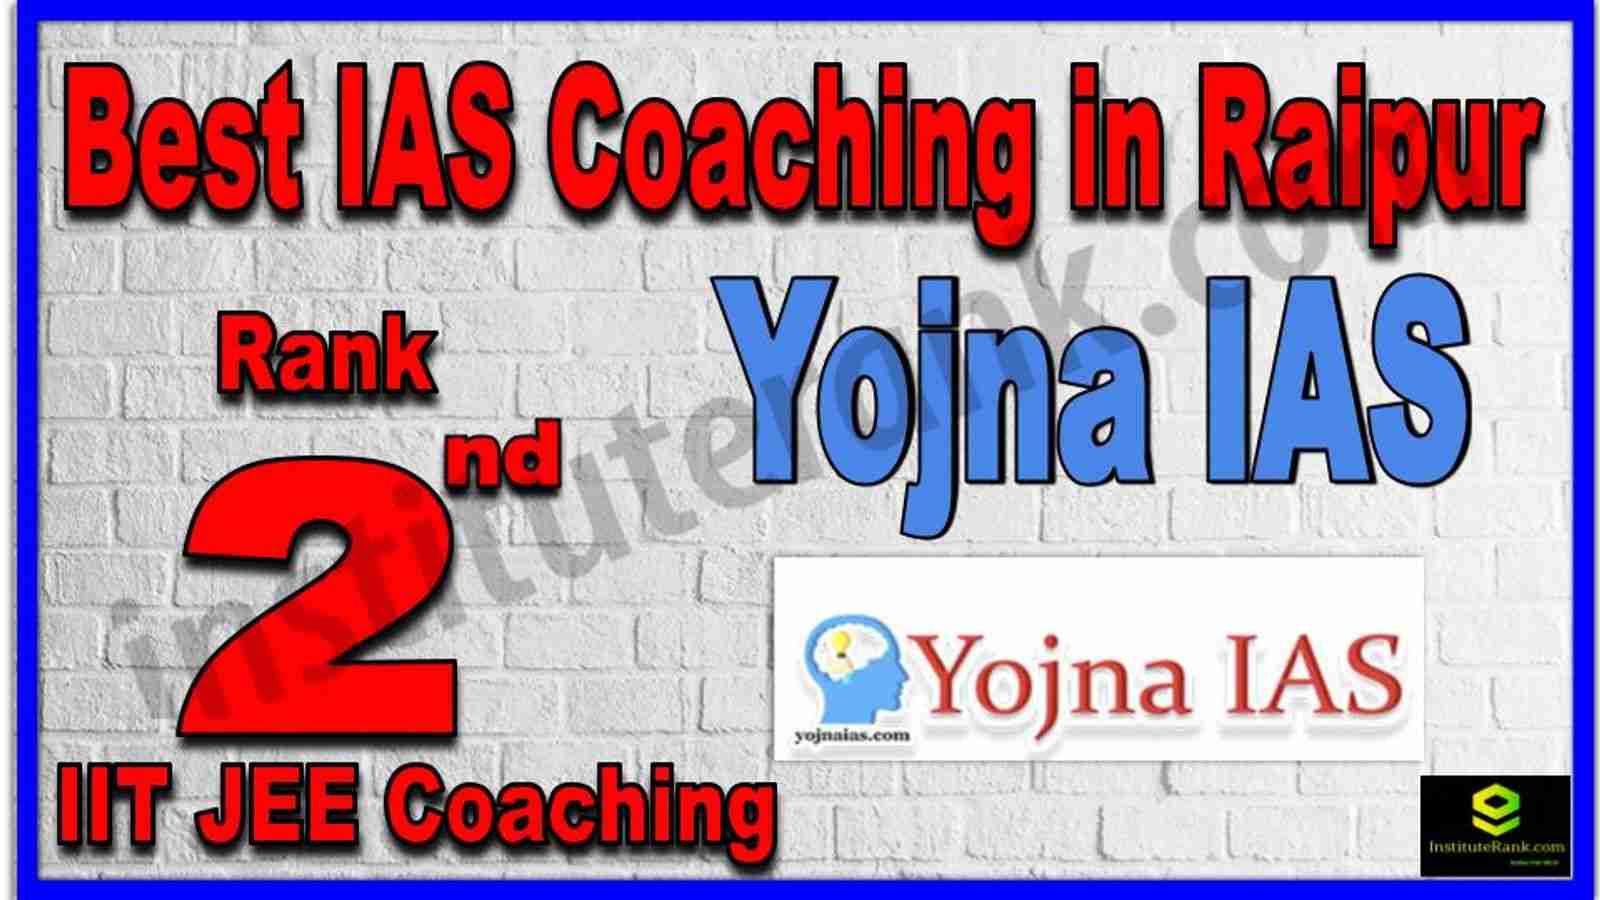 Rank 2nd Best IAS Coaching in Raipur